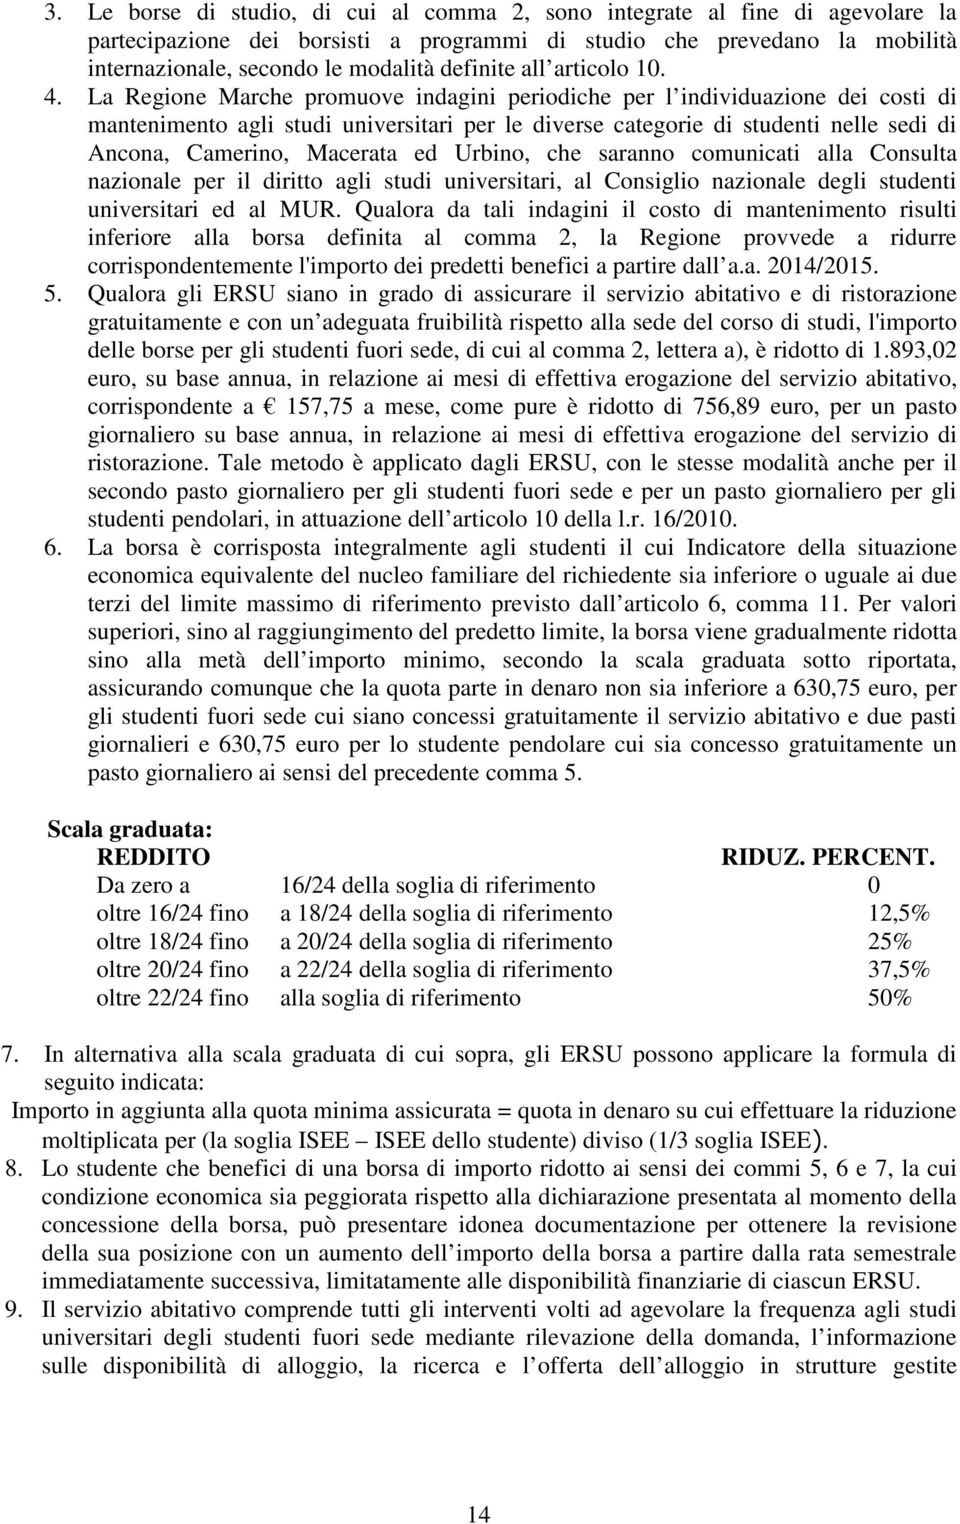 La Regione Marche promuove indagini periodiche per l individuazione dei costi di mantenimento agli studi universitari per le diverse categorie di studenti nelle sedi di Ancona, Camerino, Macerata ed